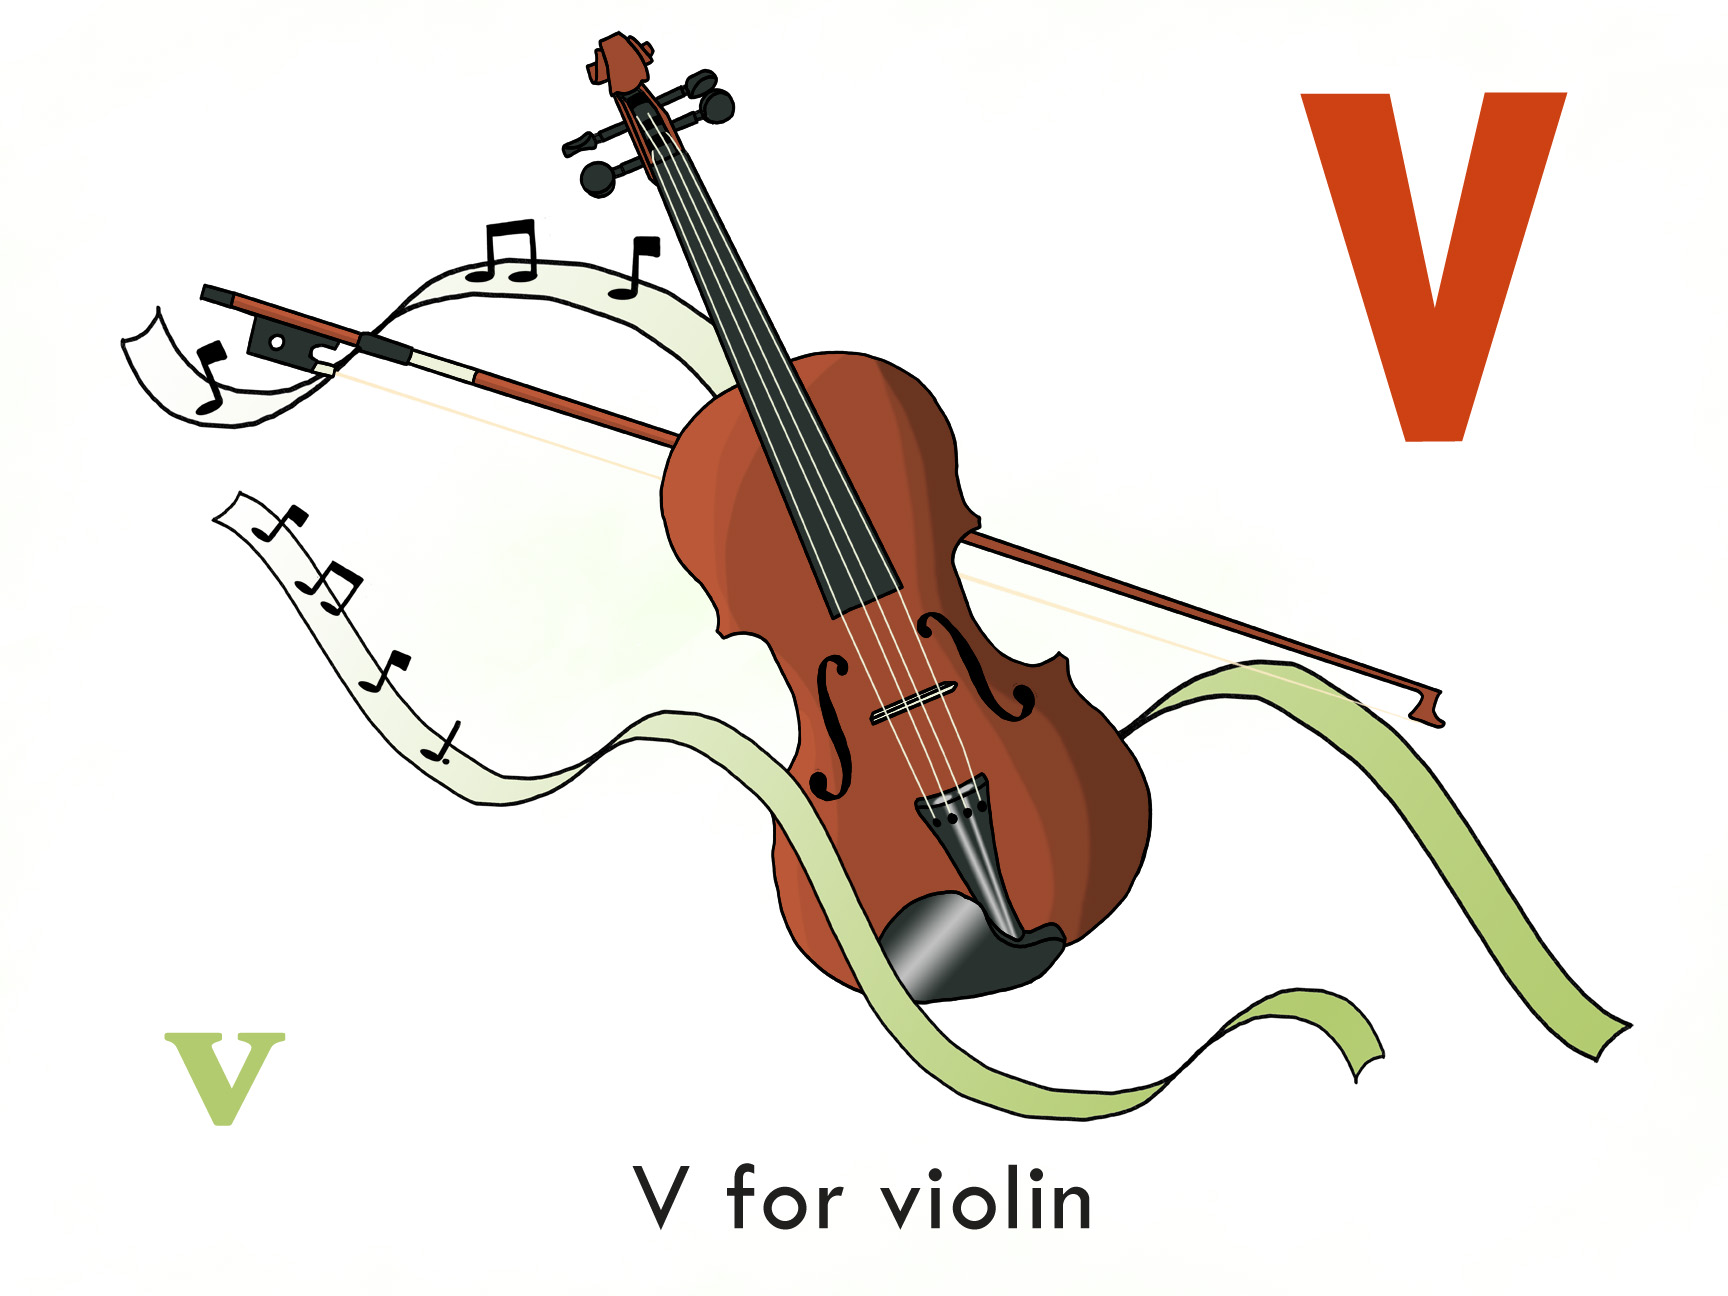 Triangel violin. Скрипка. Скрипка картинка для детей. Скрипка иллюстрация для детей. Скрипка рисунок для детей.